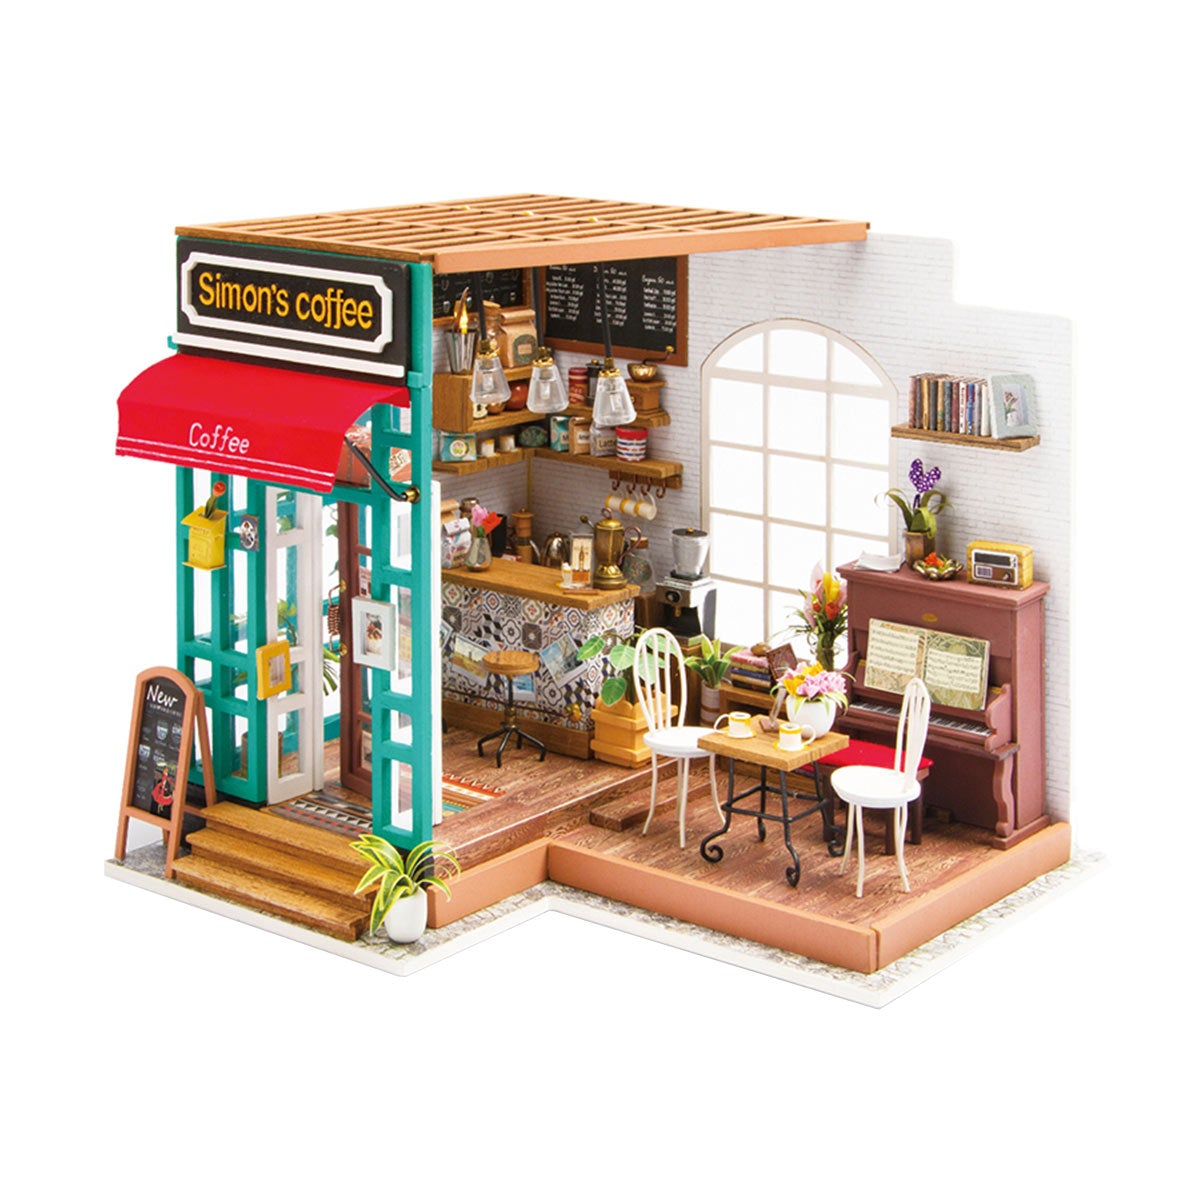 Simonova kaviareň - miniatúrna kaviareň v domčeku pre bábiky, ktorú si urobíš sám